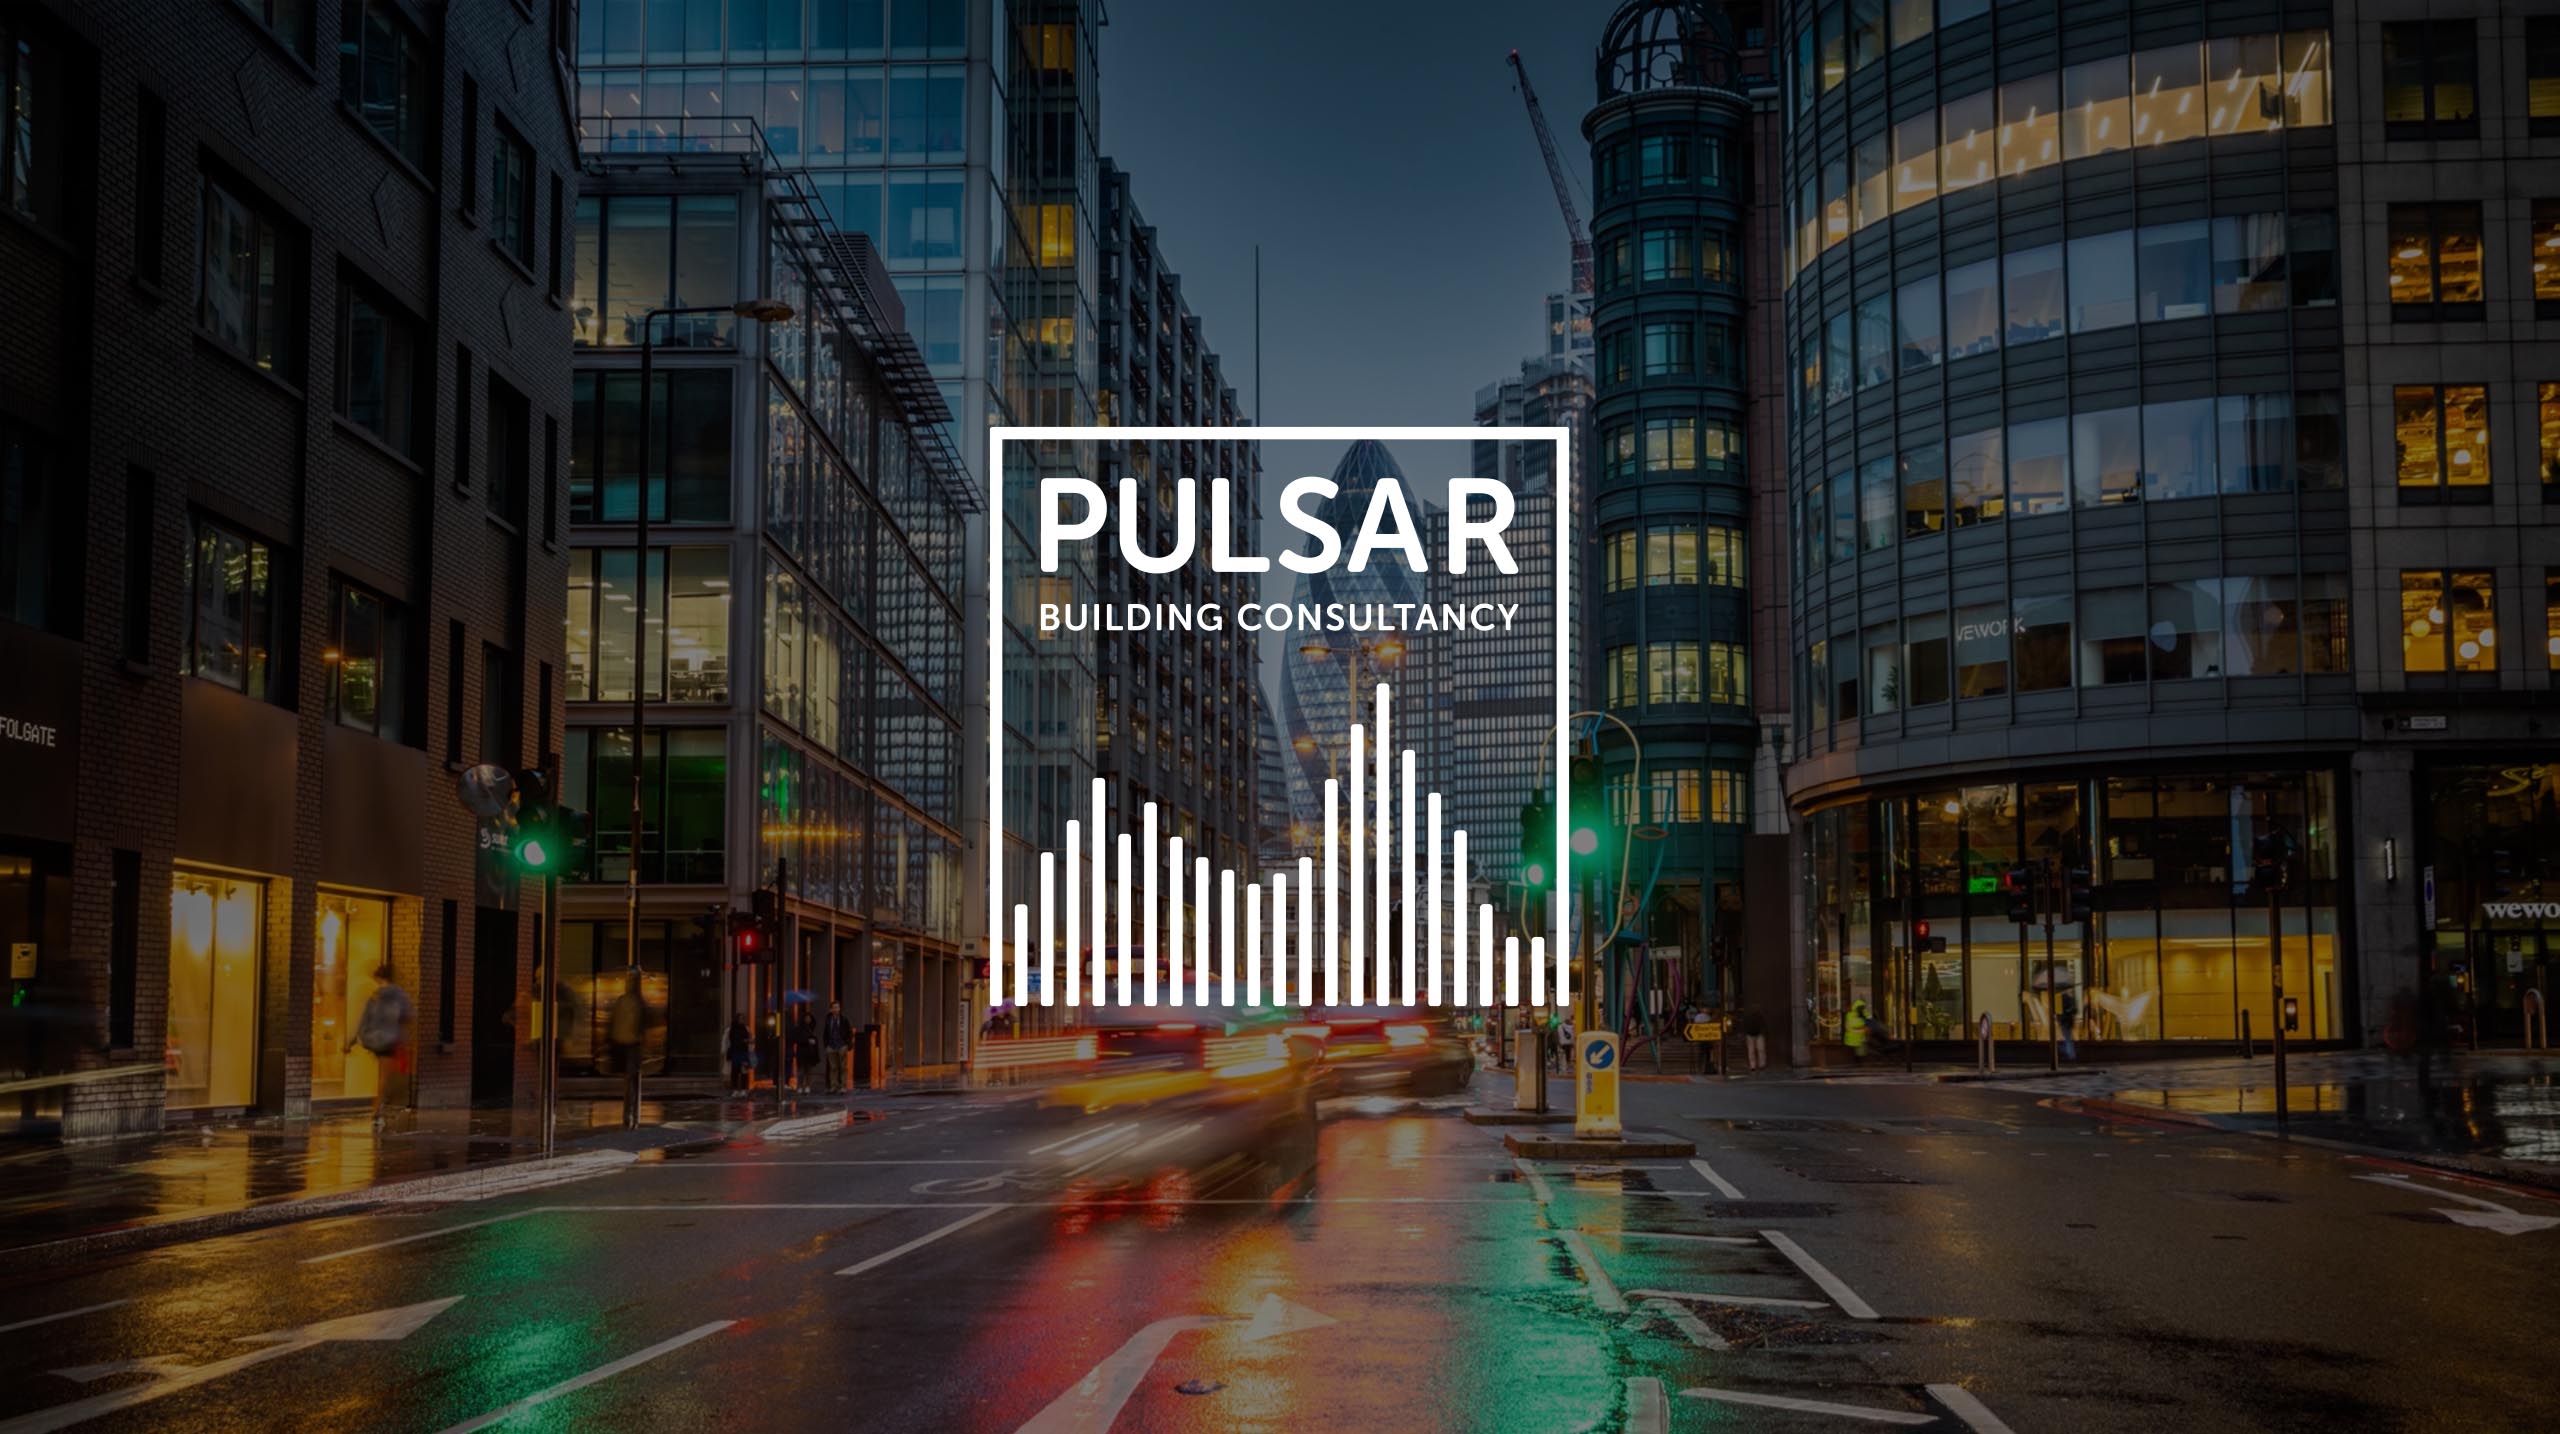 Pulsar Building Consultancy